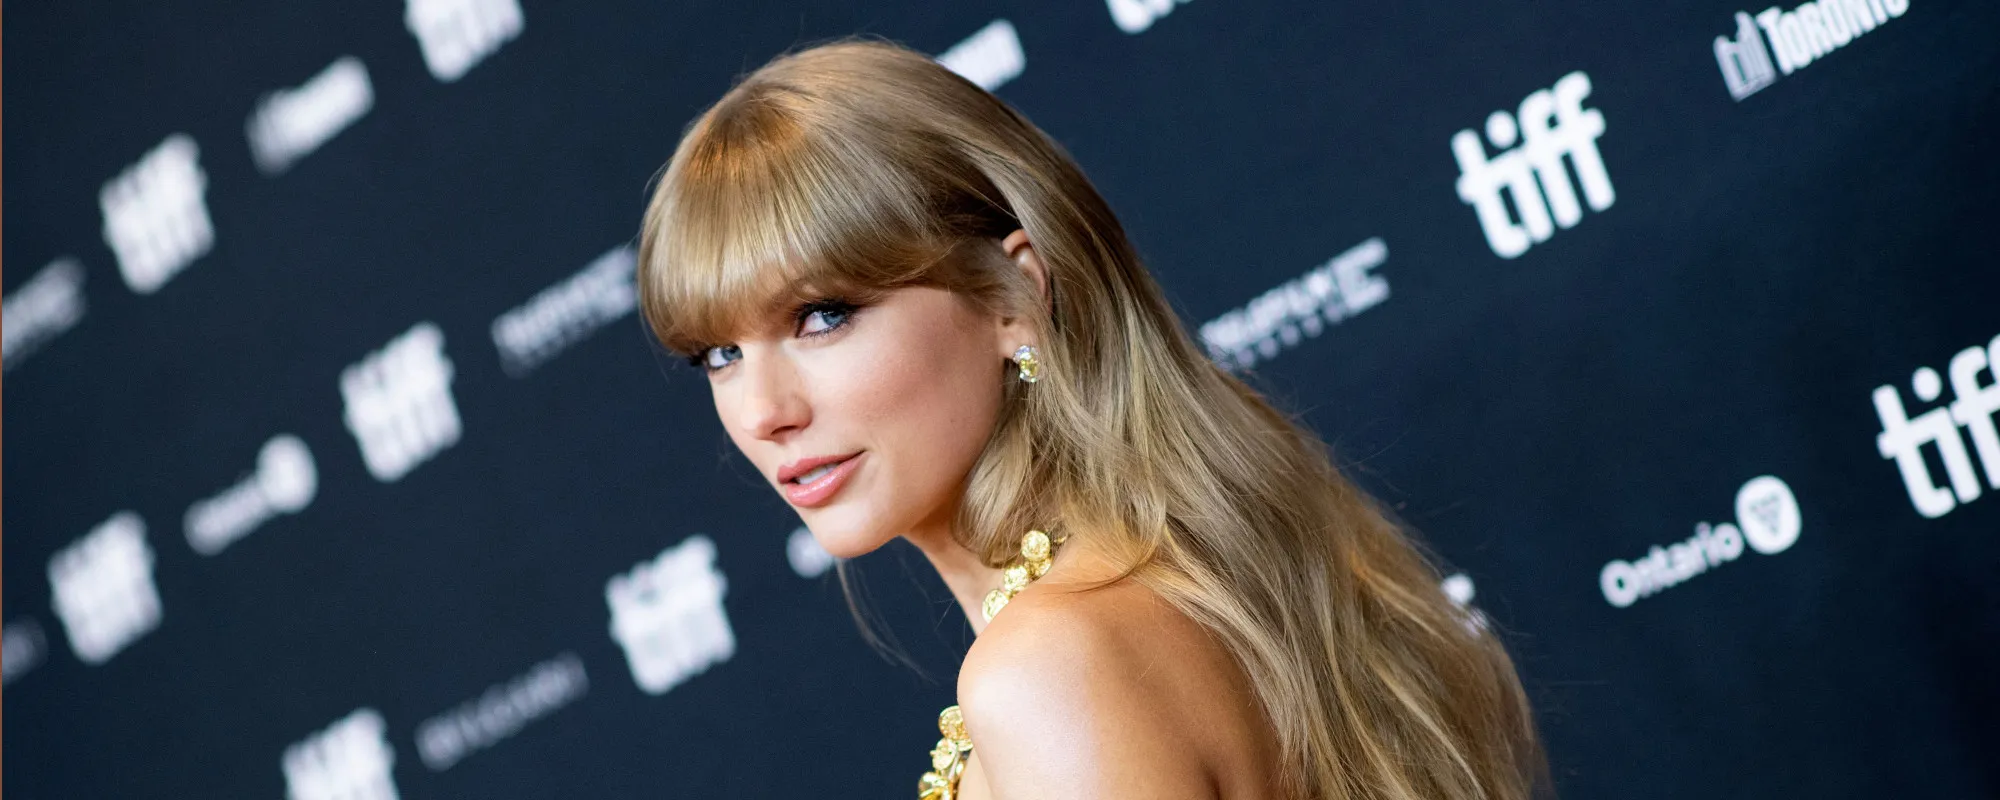 Taylor Swift Drops ‘Anti-Hero’ Music Video Alongside New Album Release